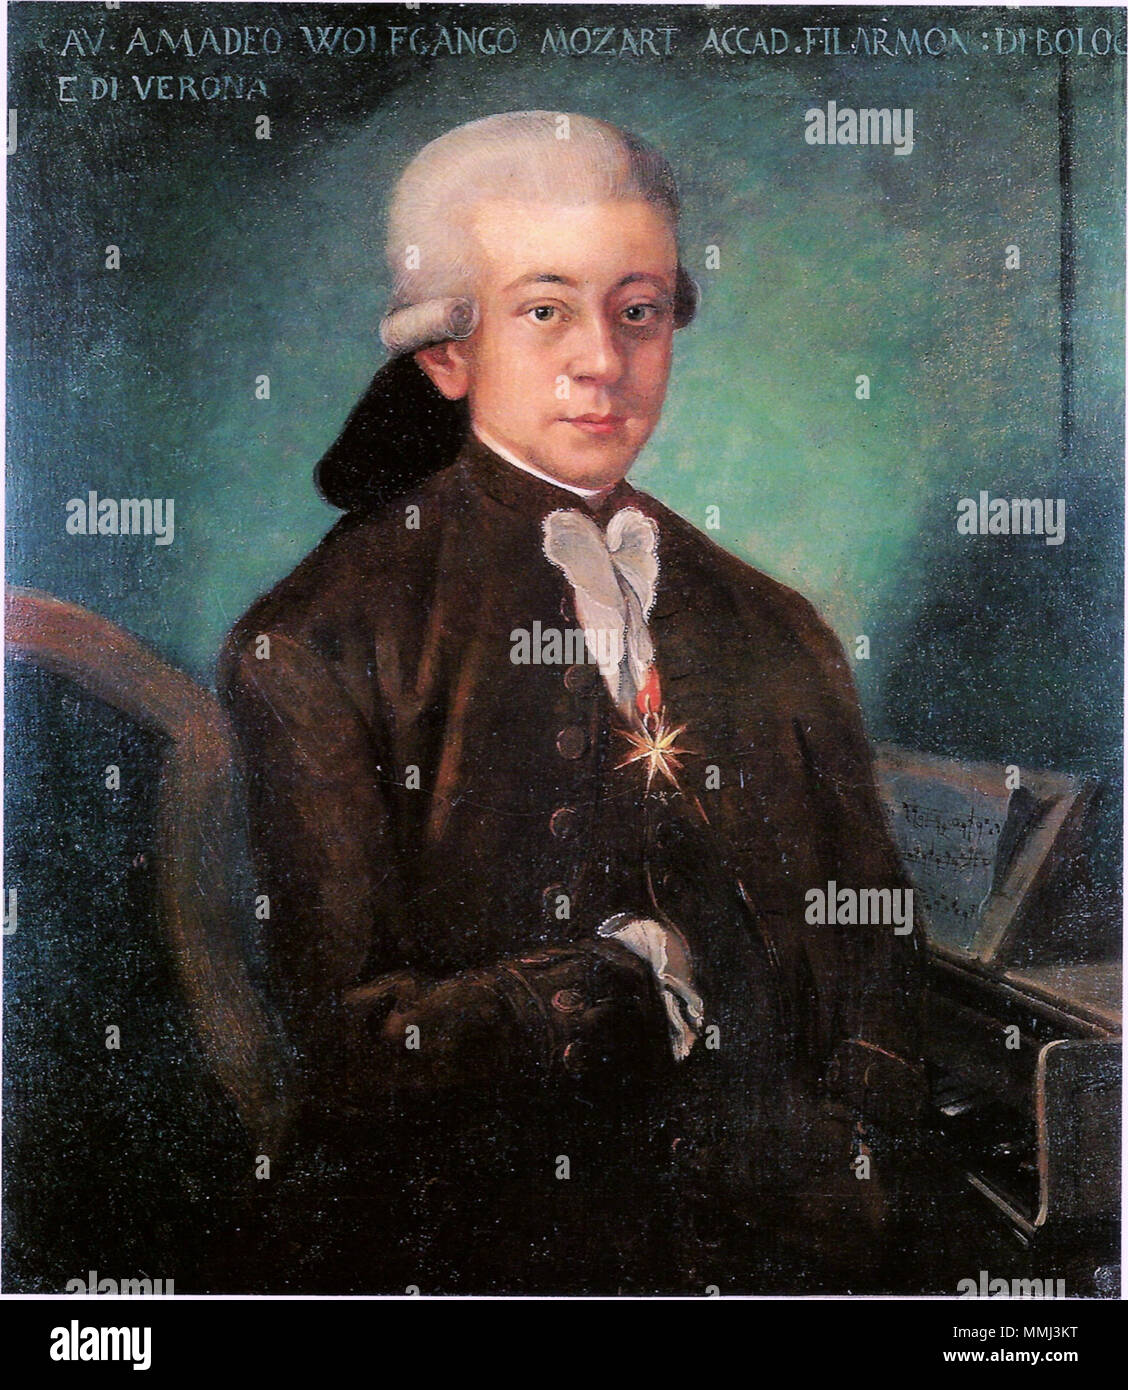 . Anglais : le soi-disant "Mozart de Bologne" a été copié en 1777 Salzbourg (Autriche) par un peintre inconnu maintenant à partir d'un original perdu de Padre Martini à Bologne (Italie), qui avait commandé pour sa galerie de compositeurs. Aujourd'hui, c'est affiché dans le Museo internazionale e biblioteca della musica à Bologne en Italie. Leopold Mozart, le père de W.A. Mozart, a écrit à propos de ce portrait : "Il a peu de valeur comme une œuvre d'art, mais aussi à la question de la ressemblance, je puis vous assurer qu'elle est parfaite." (texte original : "Malerisch hat es wenig wert, aber was Die Ähnlichkeit anbetrifft, donc versichere ich Ihnen, d Banque D'Images